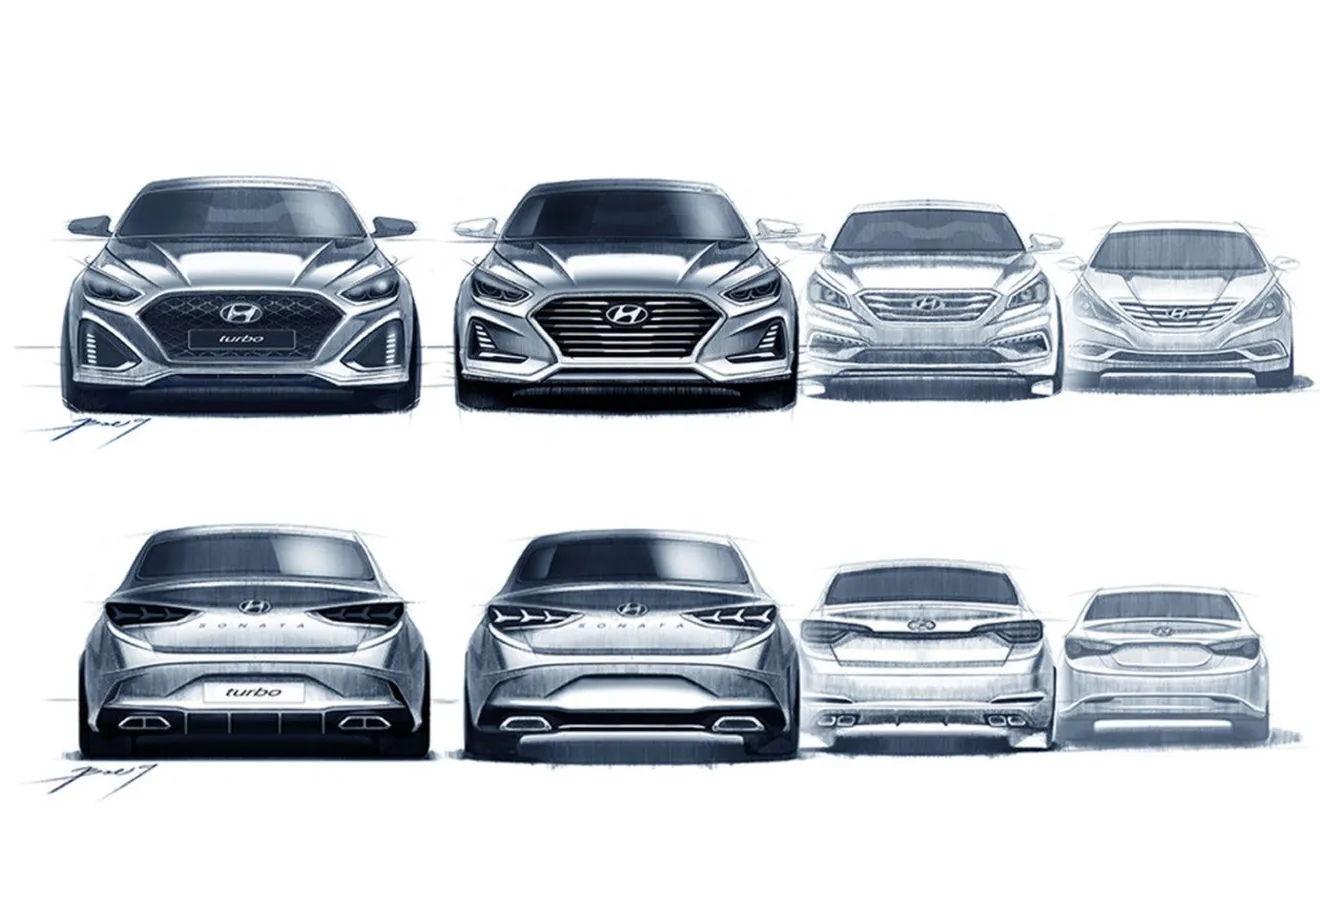 Hyundai Sonata 2018, el sedán coreano estrena rostro